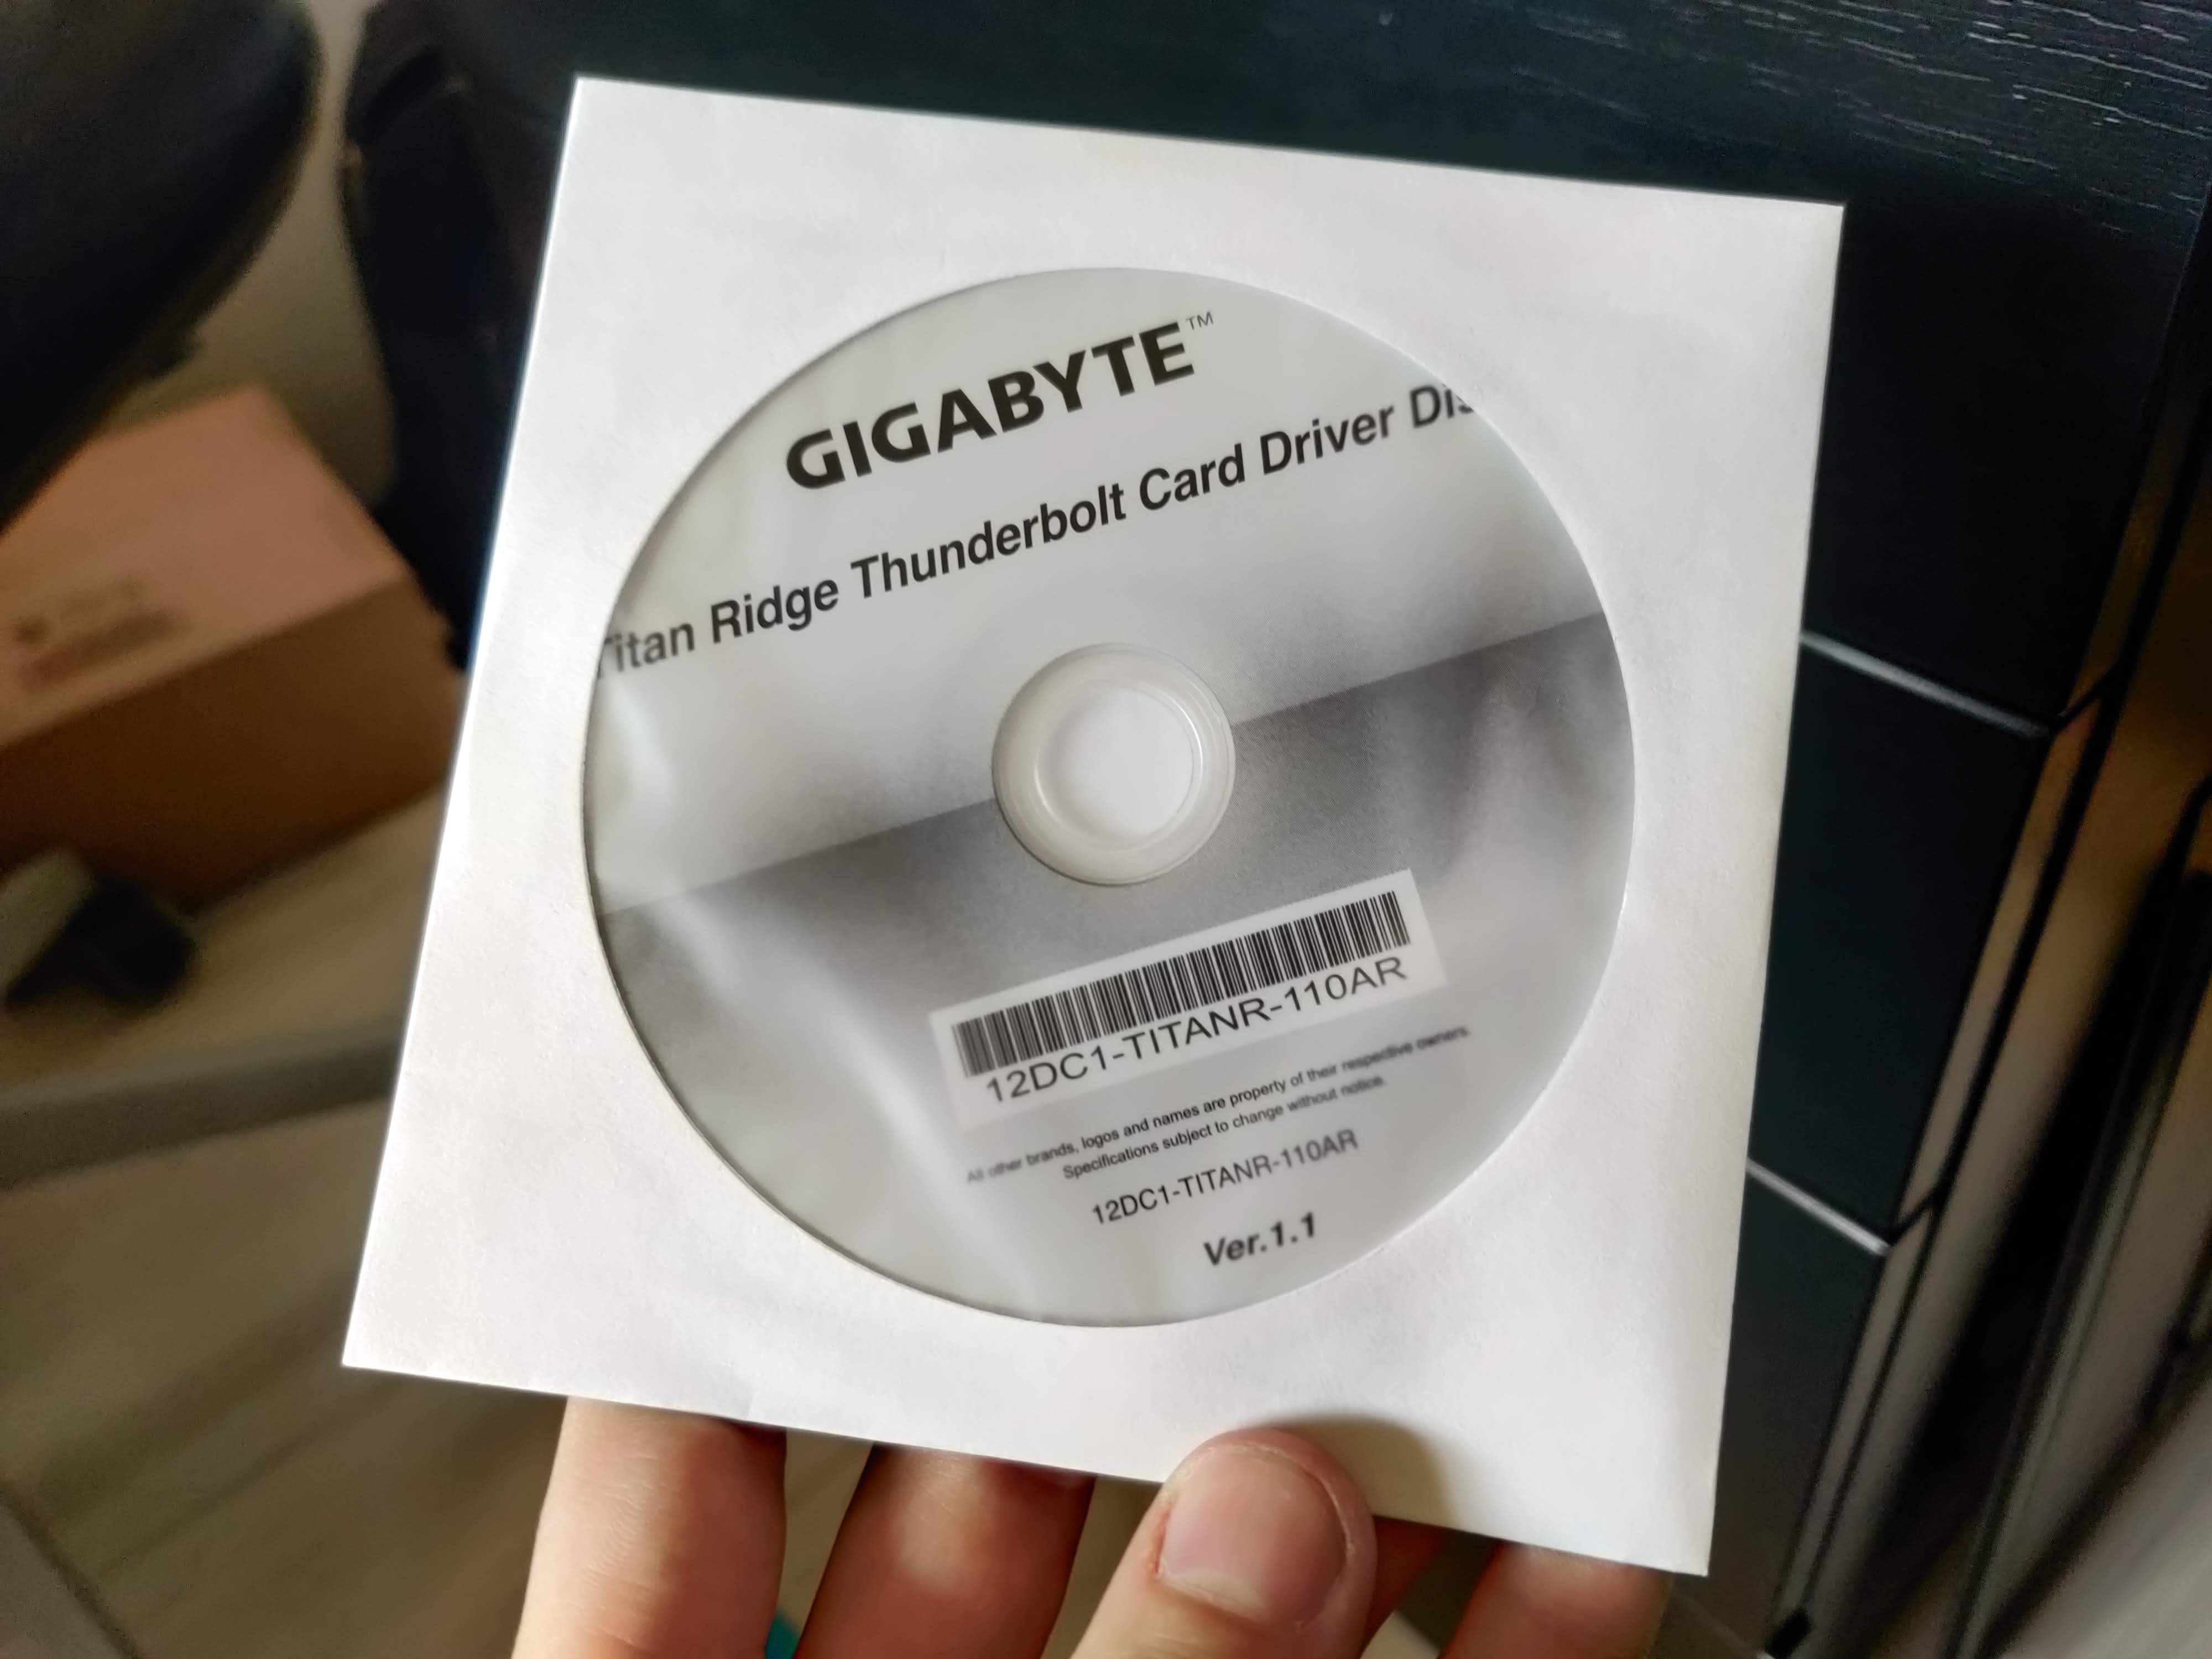 The driver CD for the Gigabyte GC-TITAN RIDGE